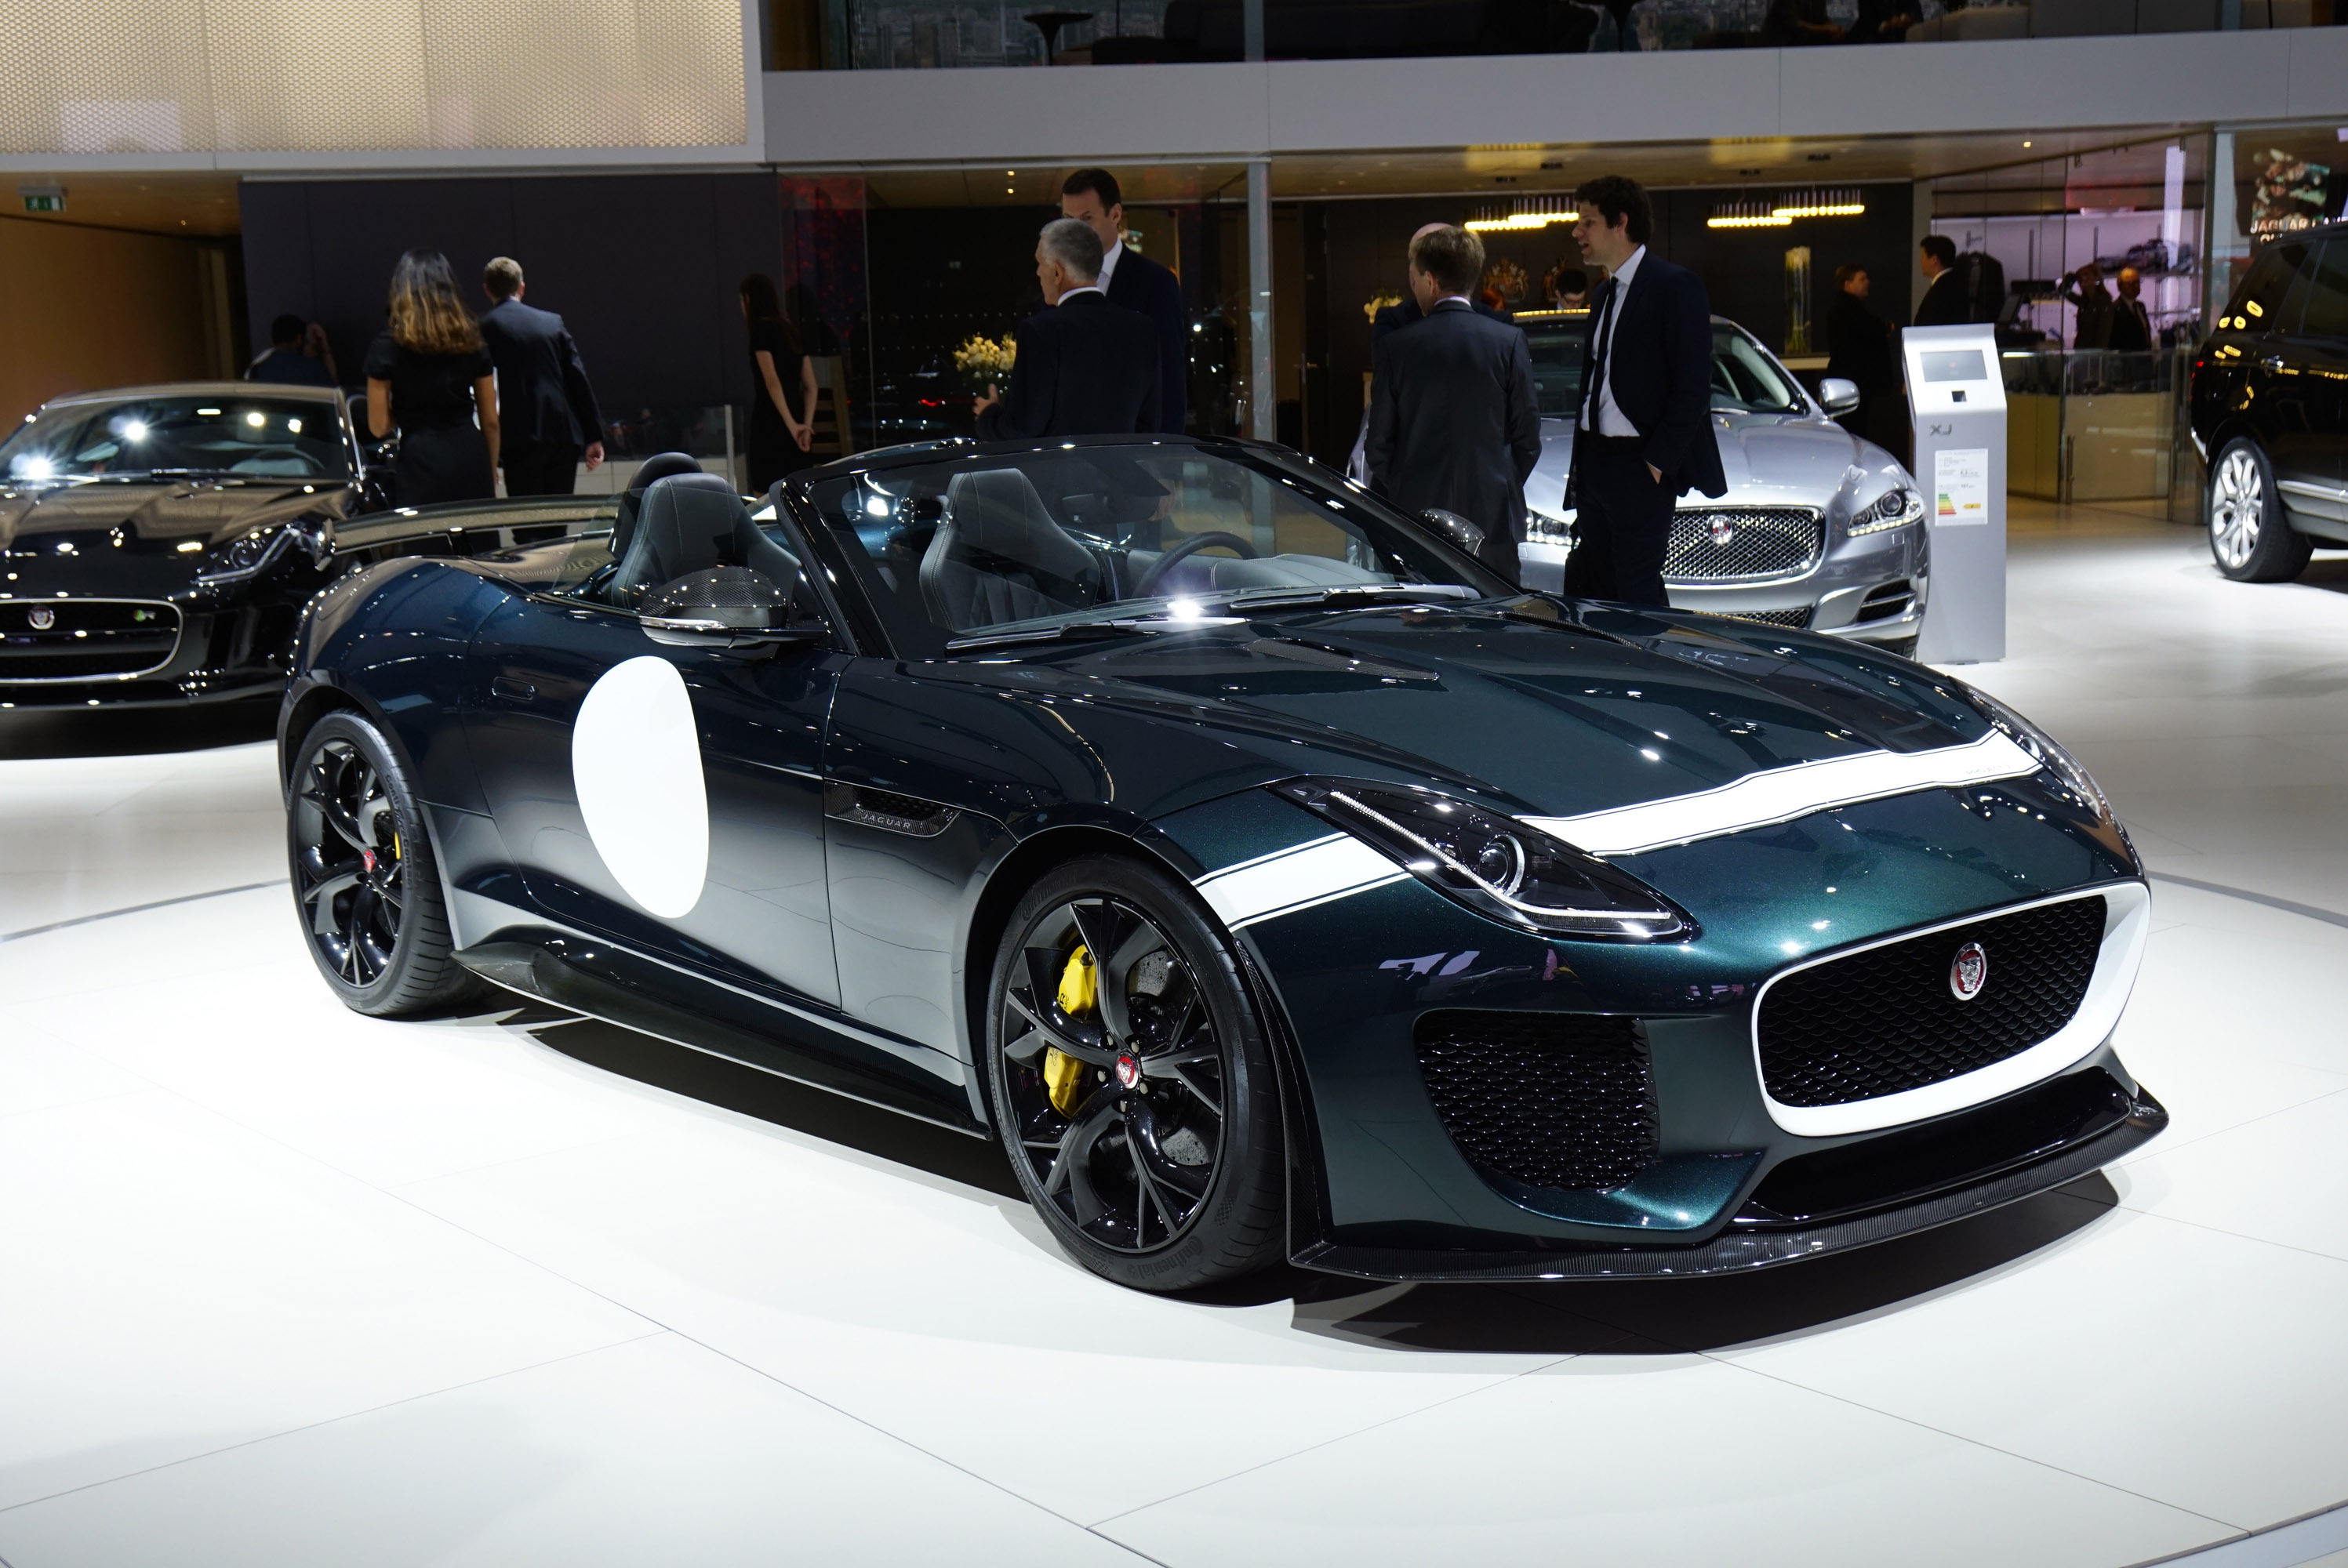 Jaguar F-Type Project 7 Paris